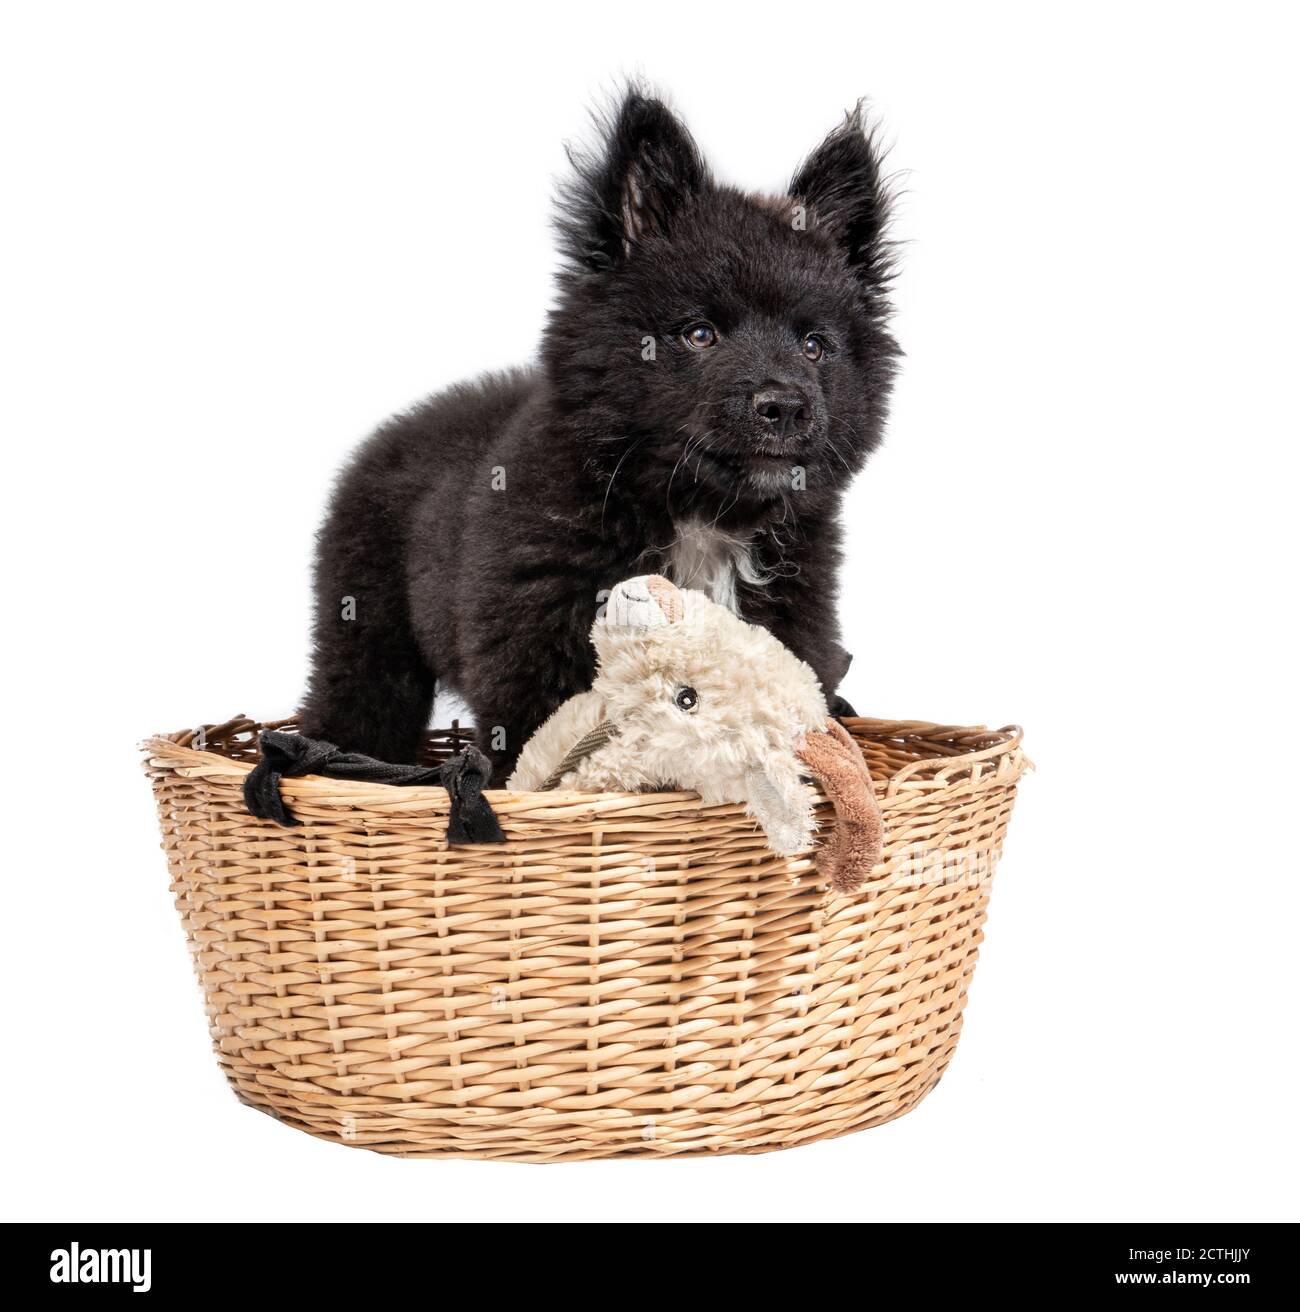 Aufmerksamer super flauschiger schwarzer Welpenhund, der in einem Korb mit einem Kaninchenhund Spielzeug steht. 12 Wochen alter Australischer Schäferhund x Keeshond Welpe. Ganzkörper-Po Stockfoto